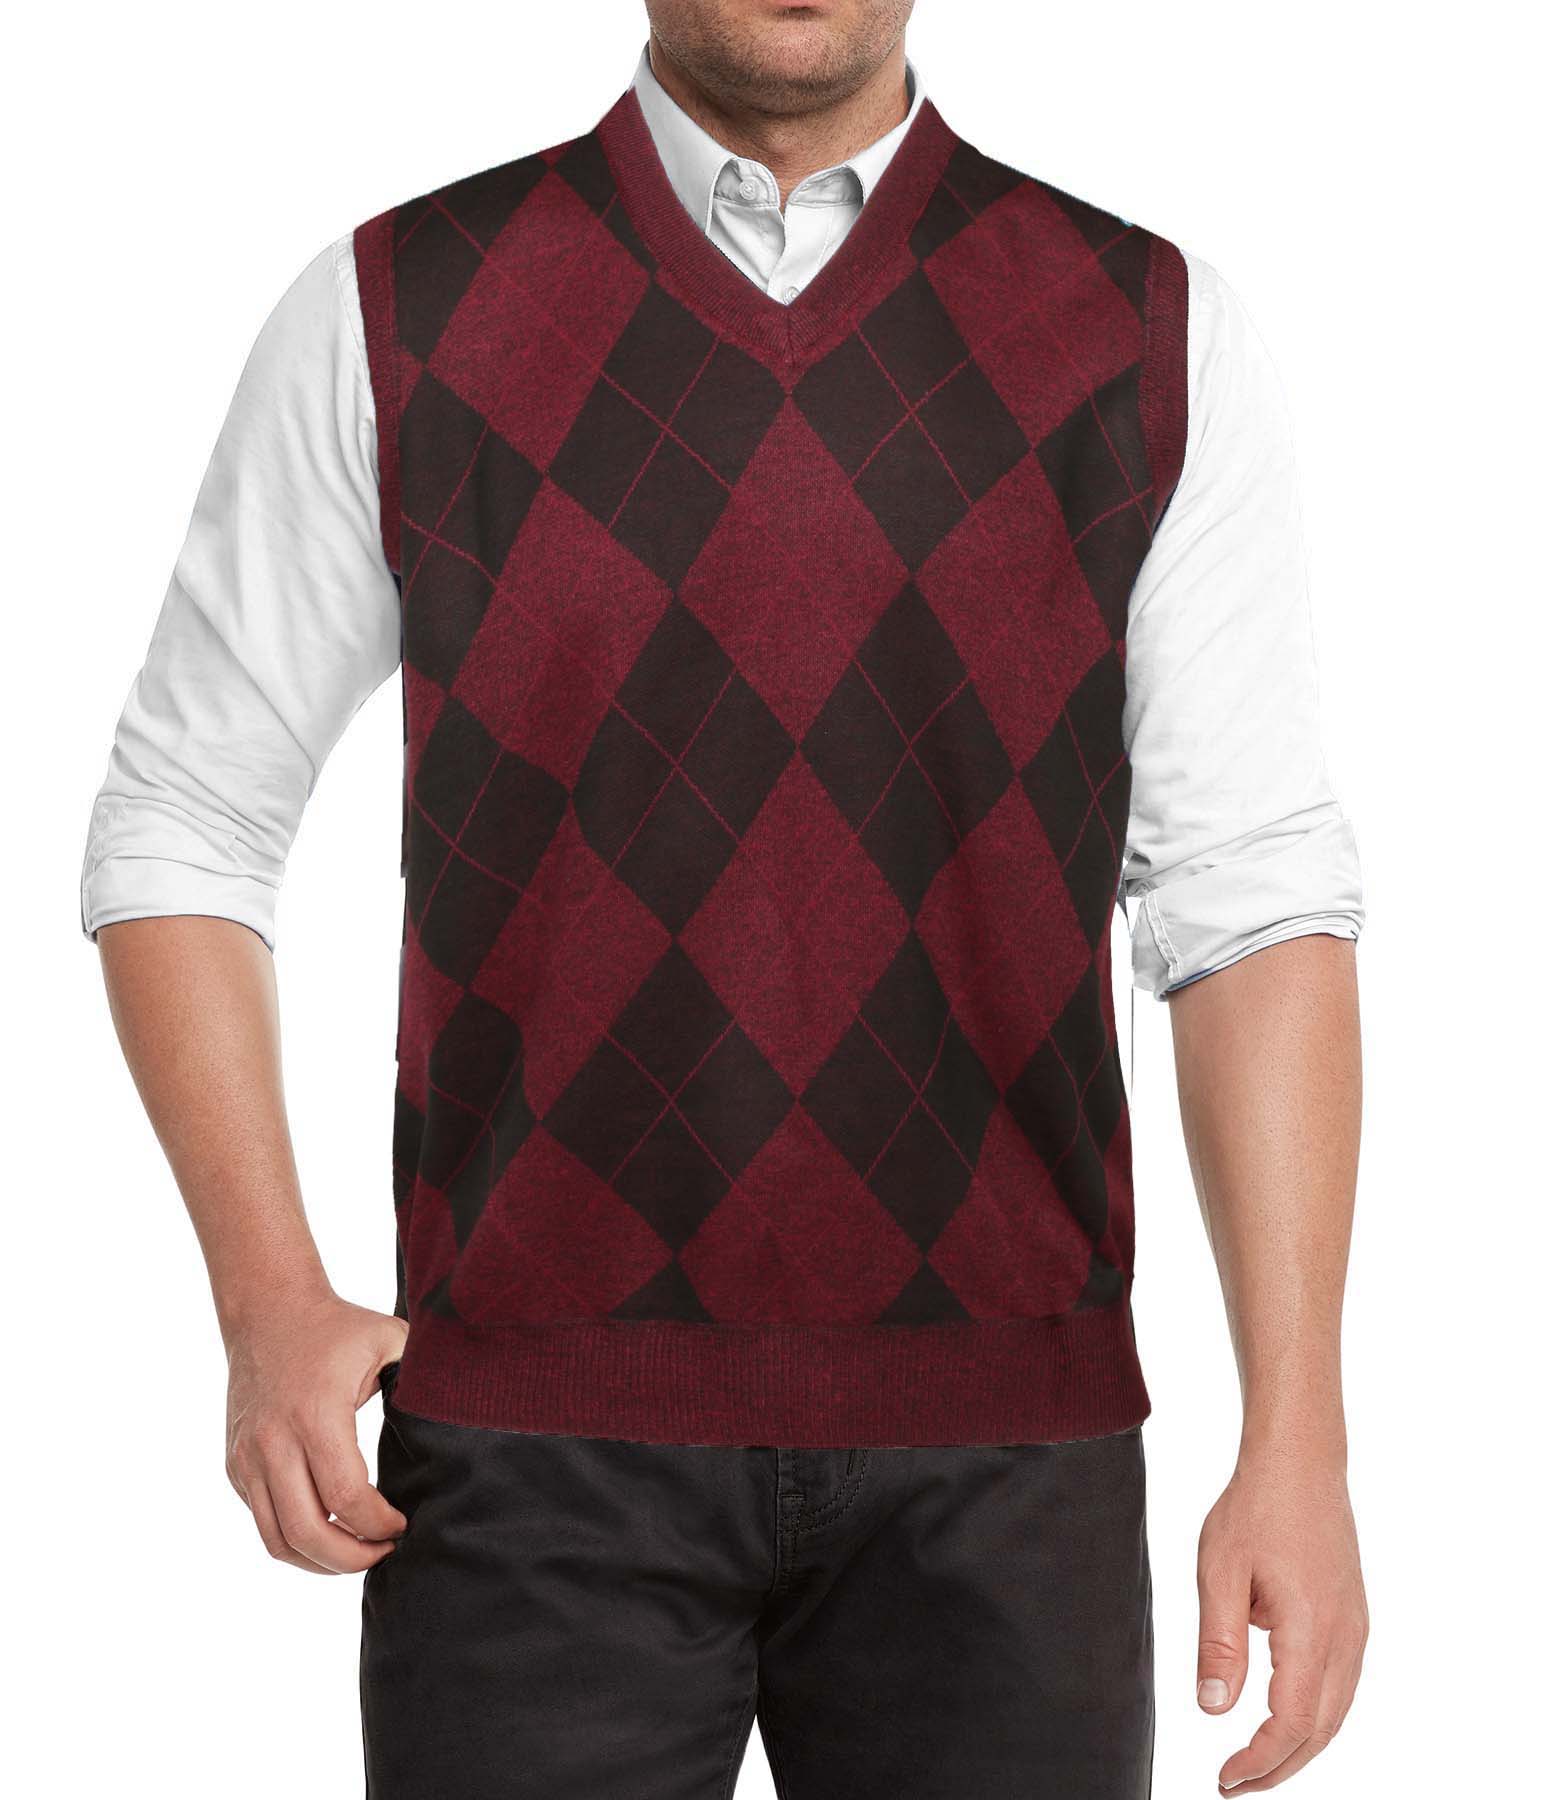 true rock men's argyle v-neck sweater vest - image 1 of 2